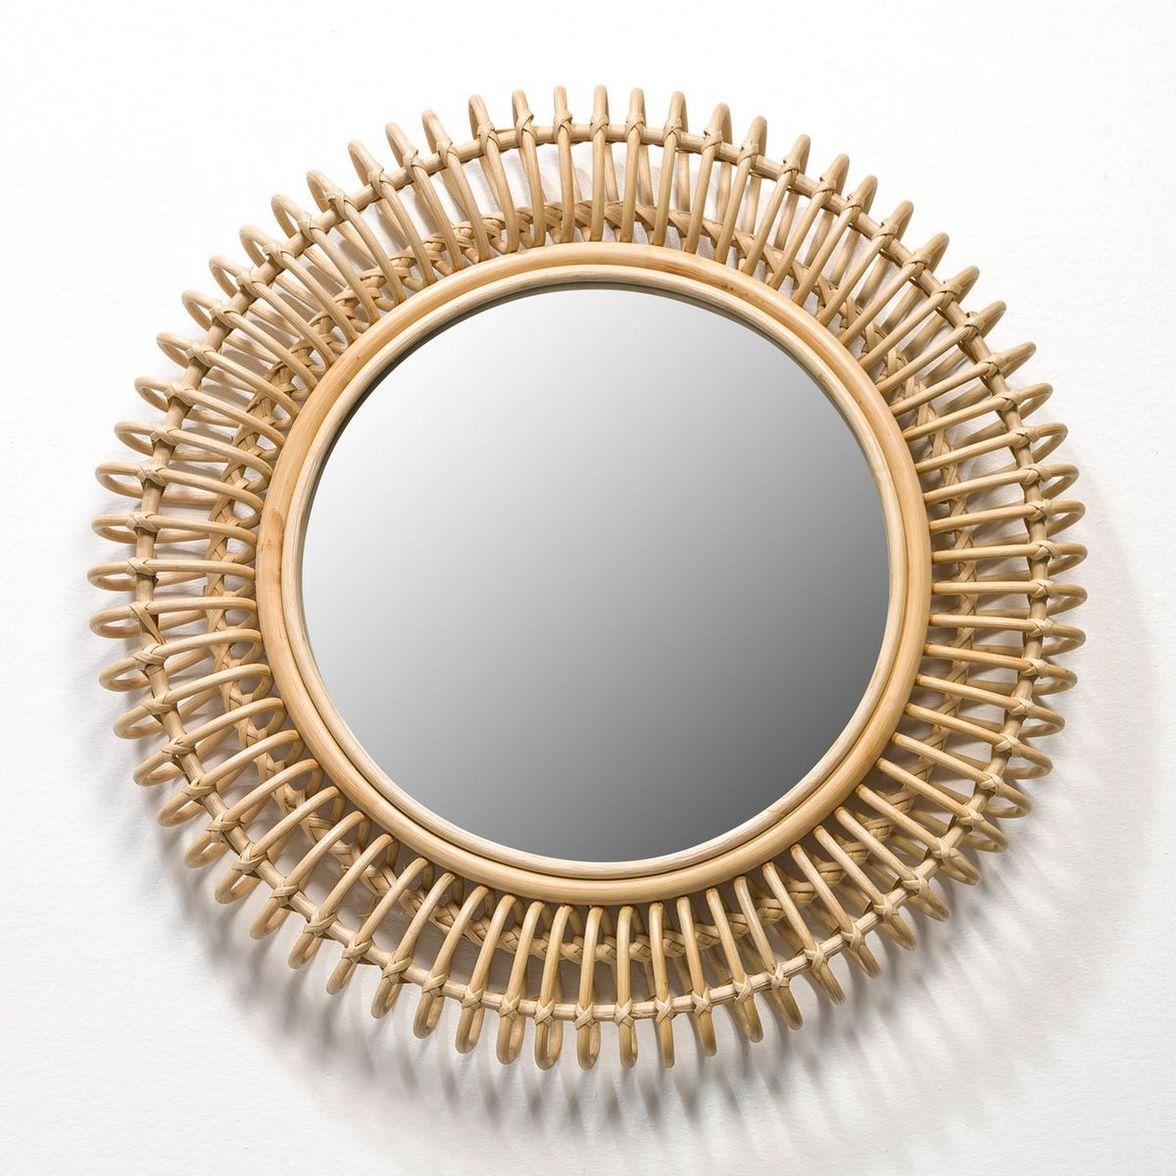 Französischer Design-Spiegel, bestehend aus einer runden, gebogenen und luftigen Rattan-Struktur, Bohemian-Chic-Design und trendigem Stil!